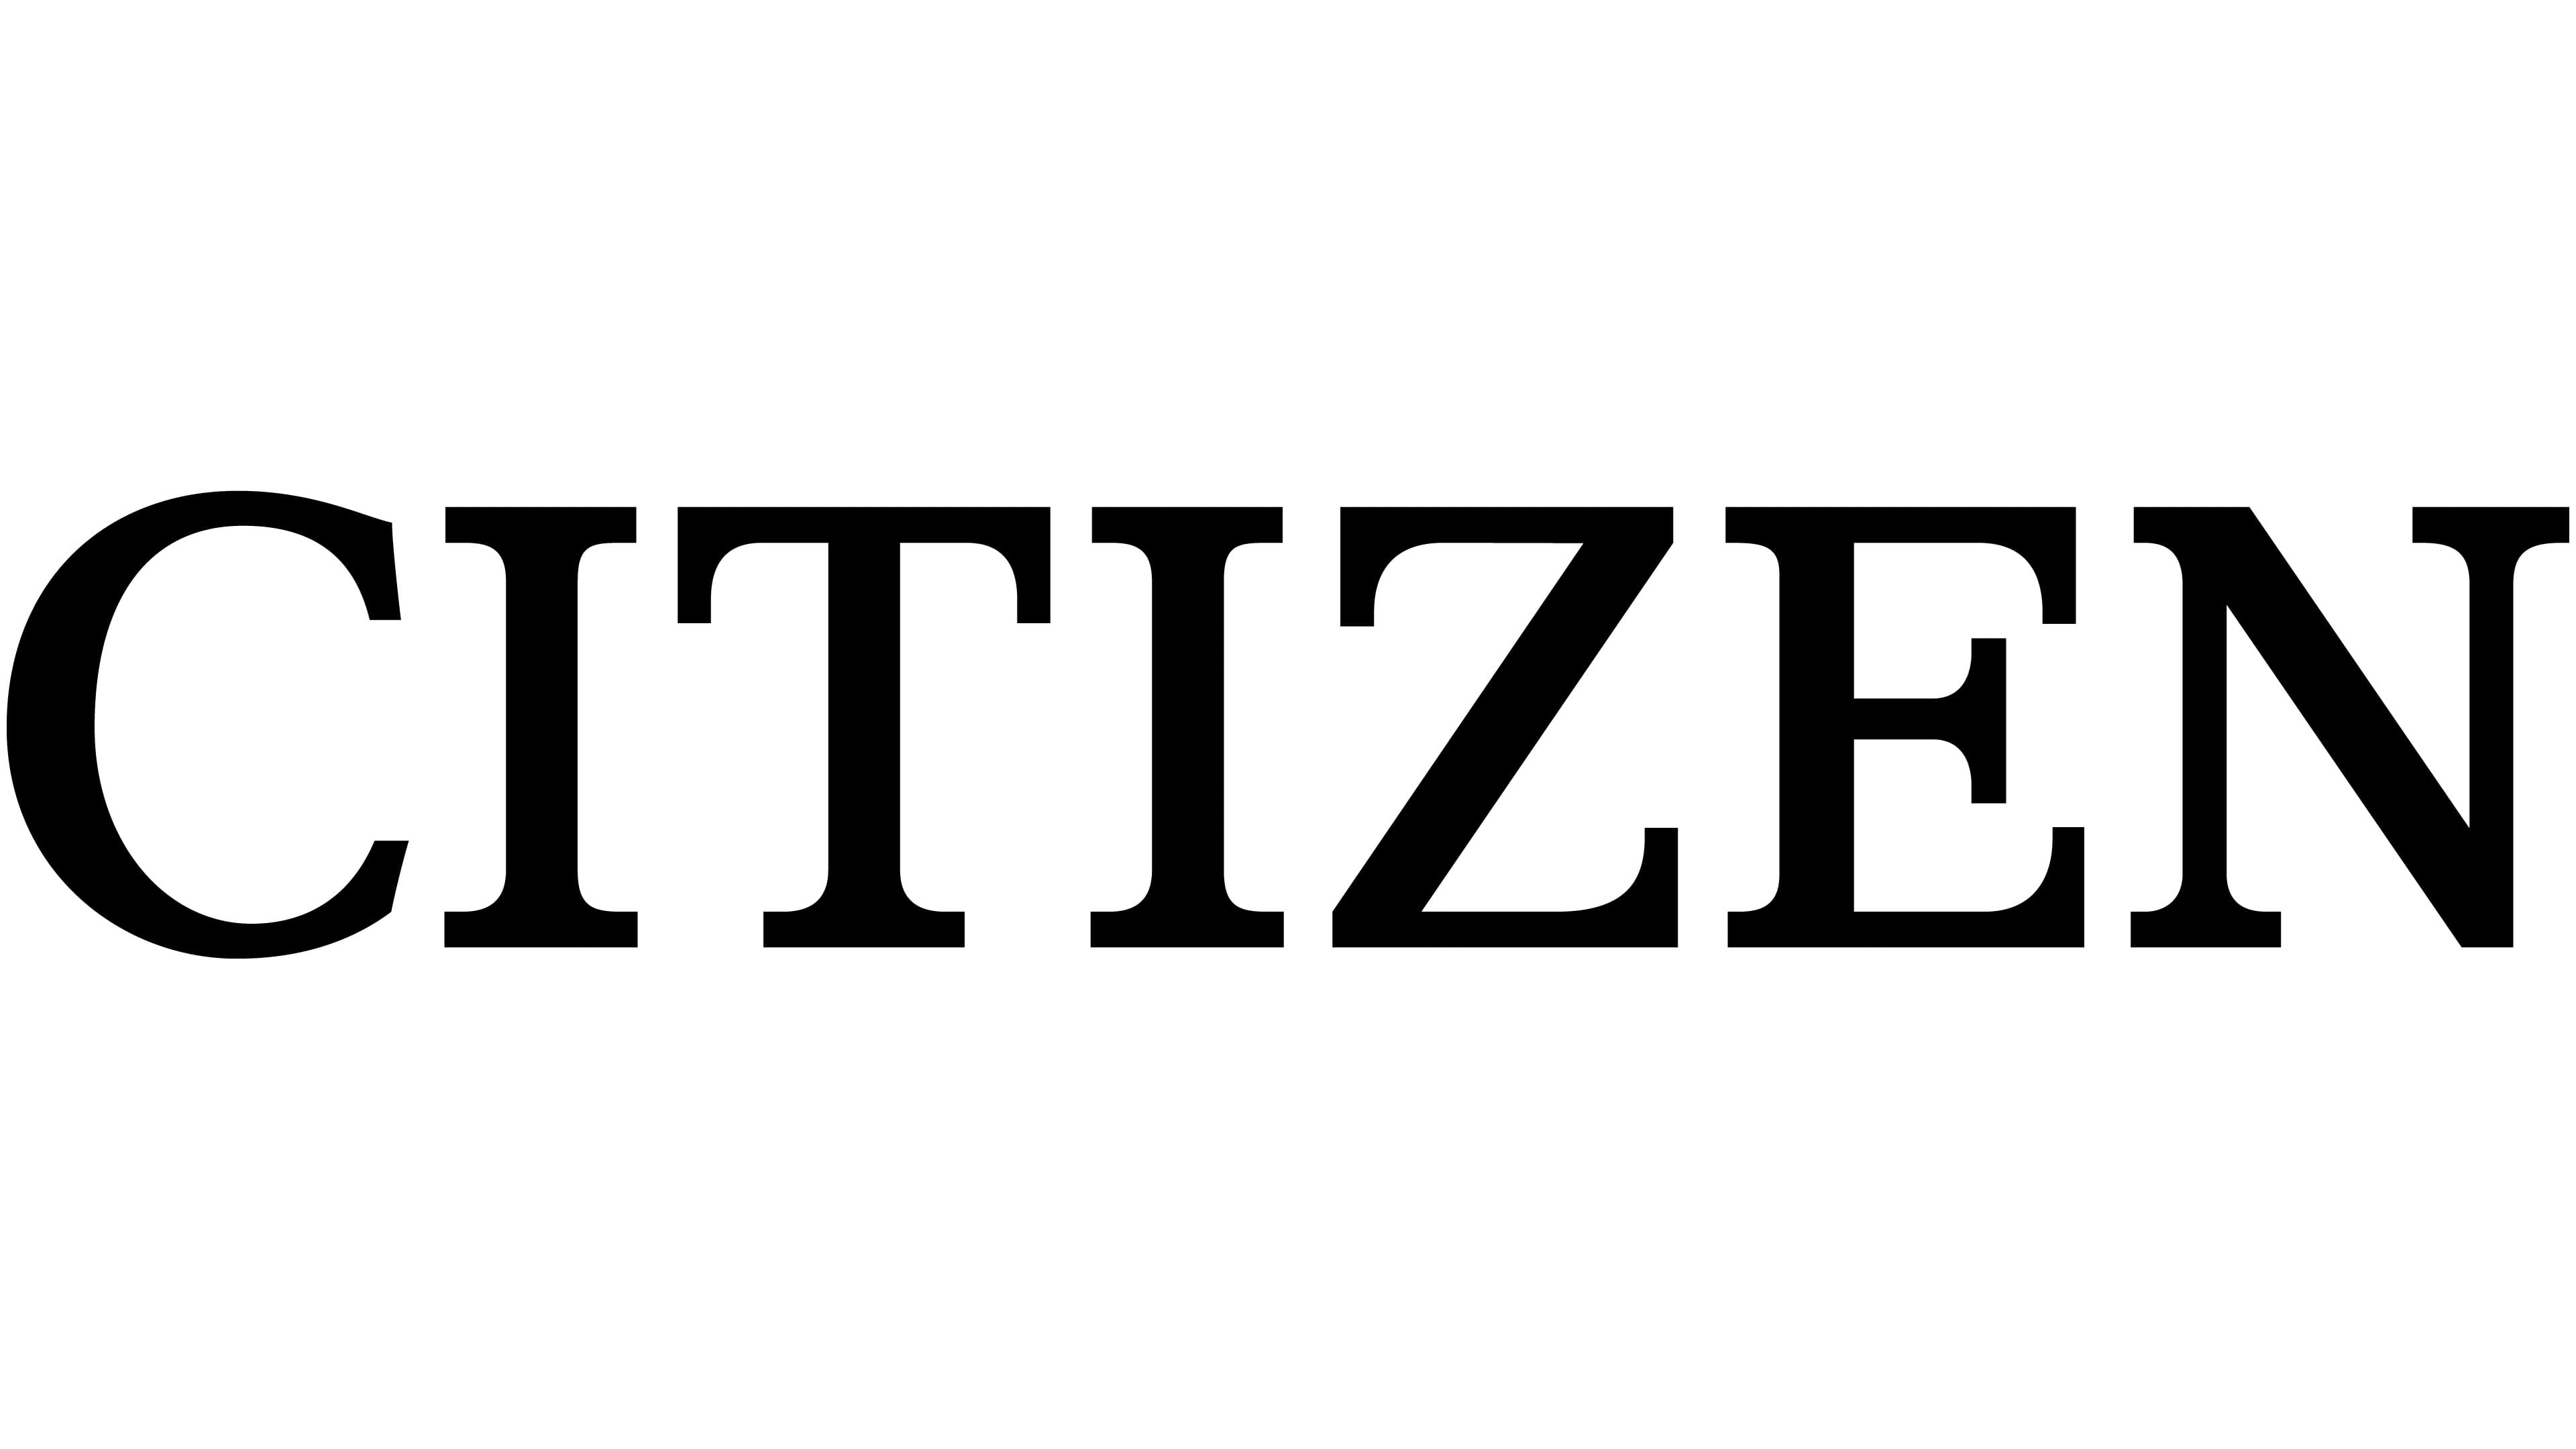 Citizen-logo